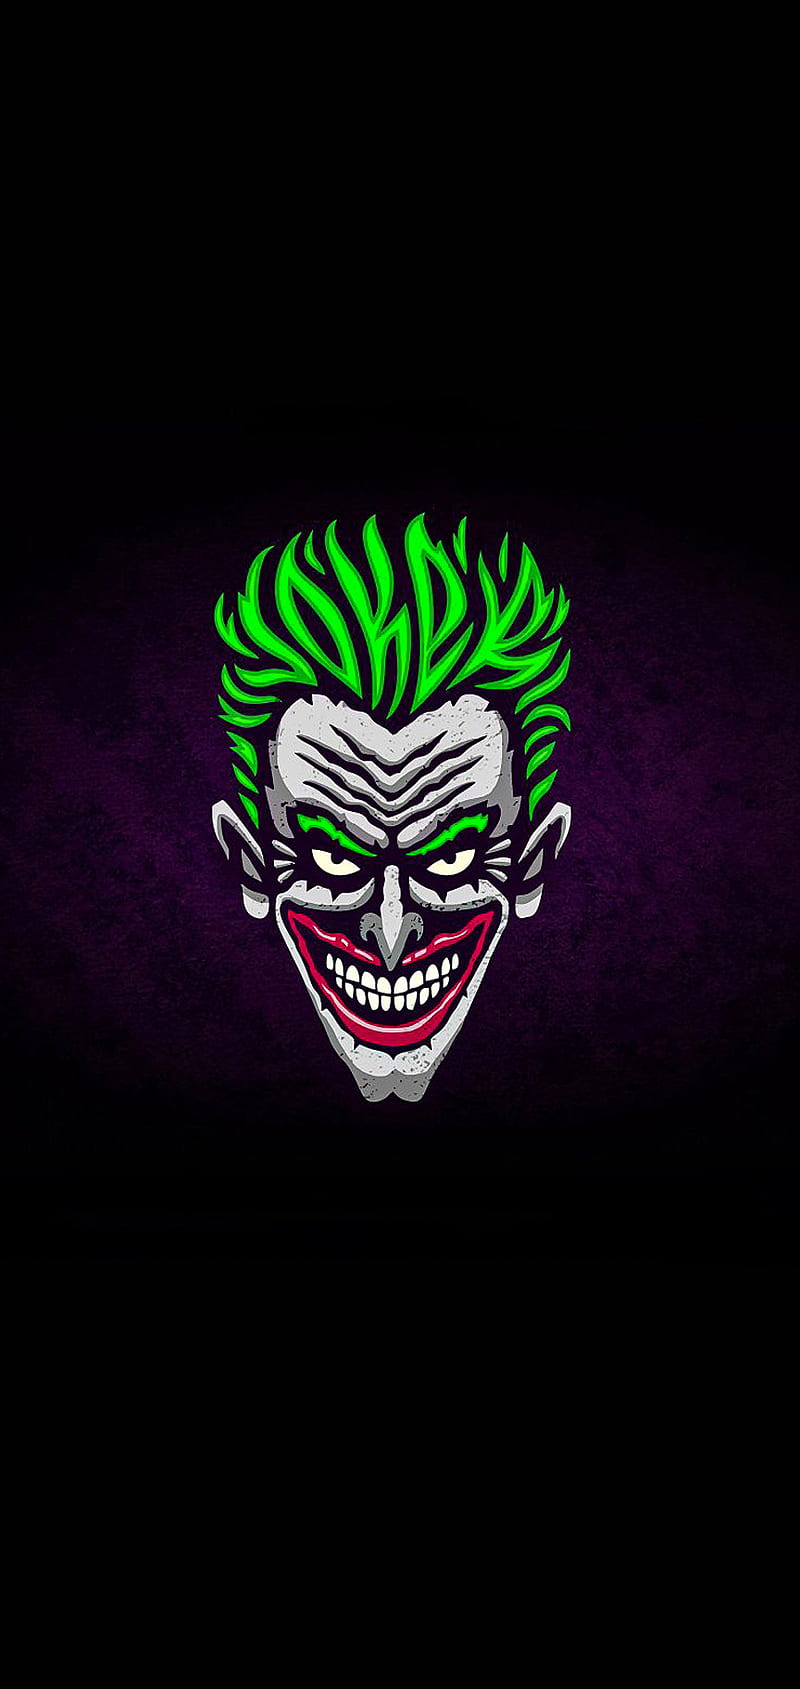 The Dark Knight Joker Wallpaper 86 images